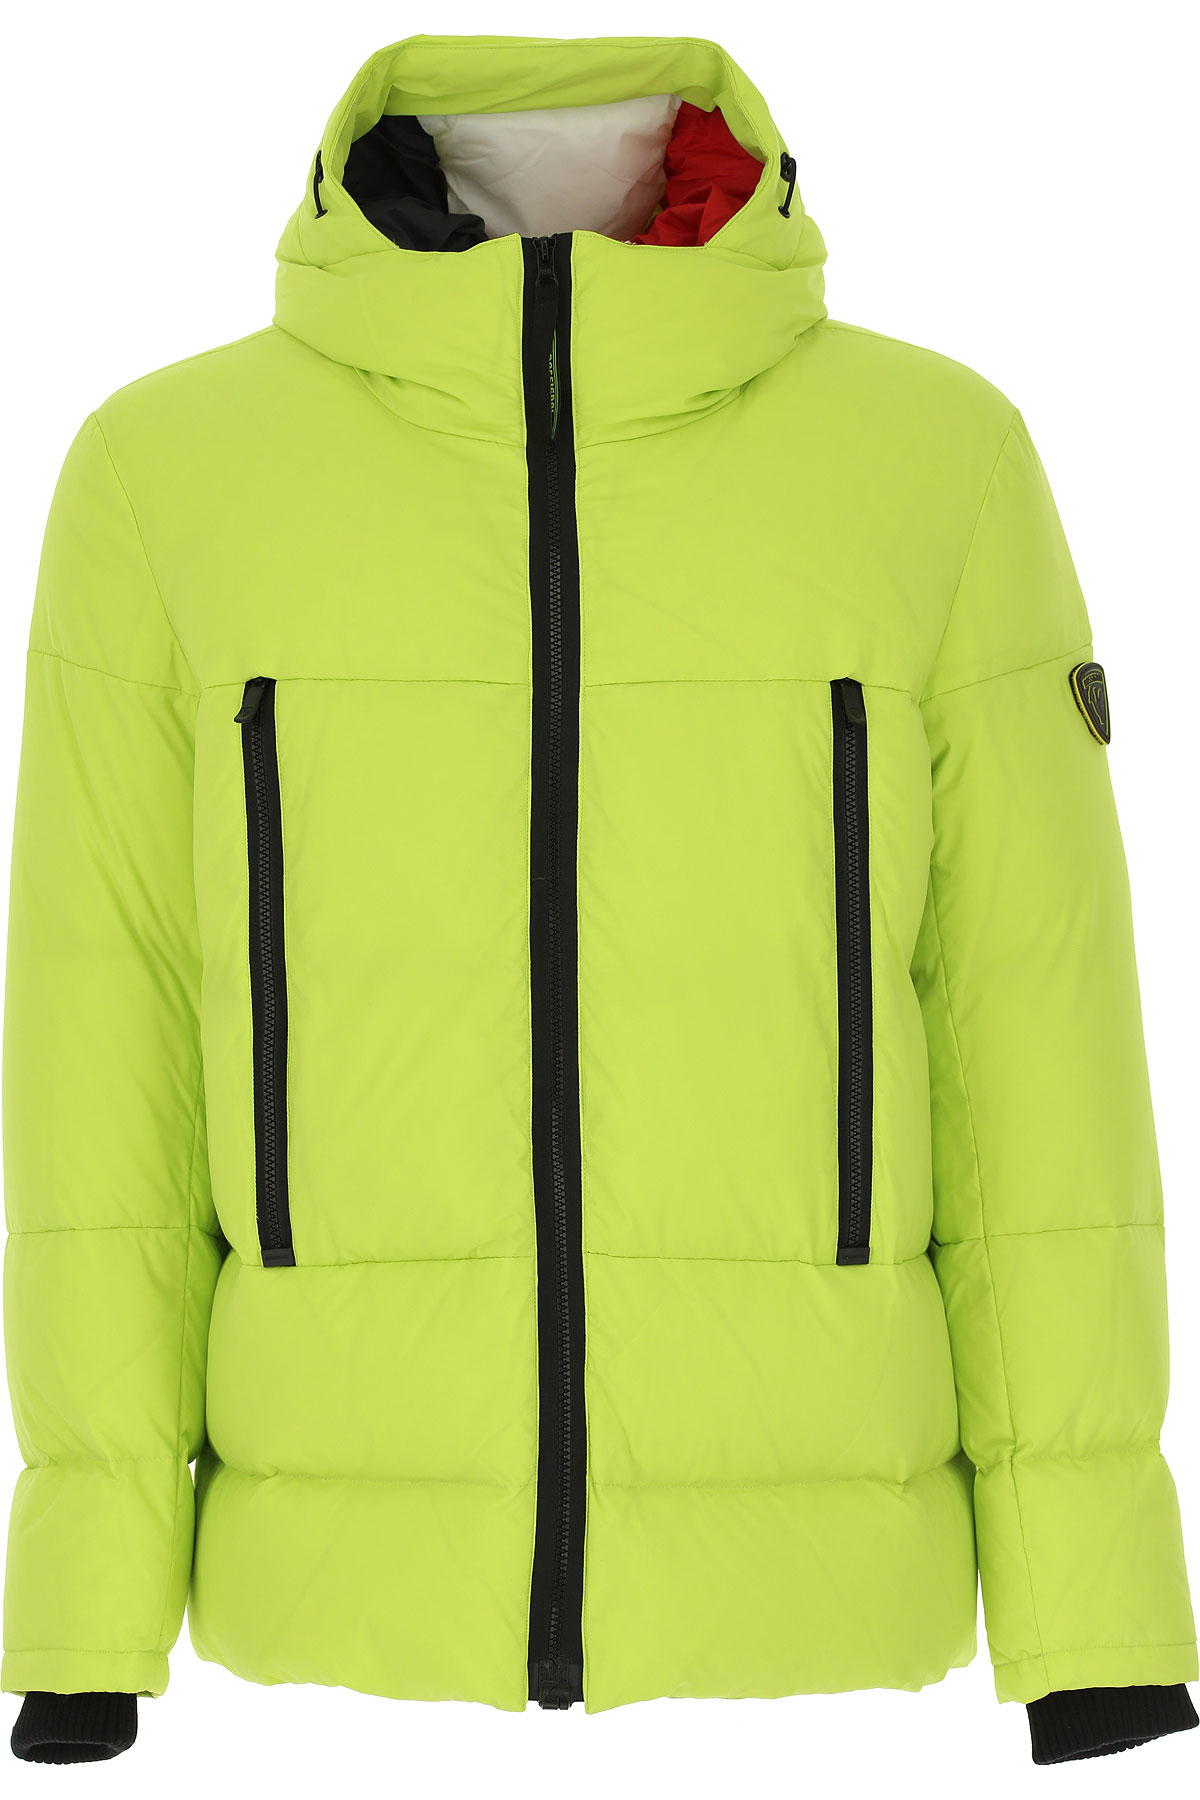 Rossignol Daunenjacke für Herren, wattierte Ski Jacke Günstig im Sale, Lime, Polyamid, 2017, L M XL